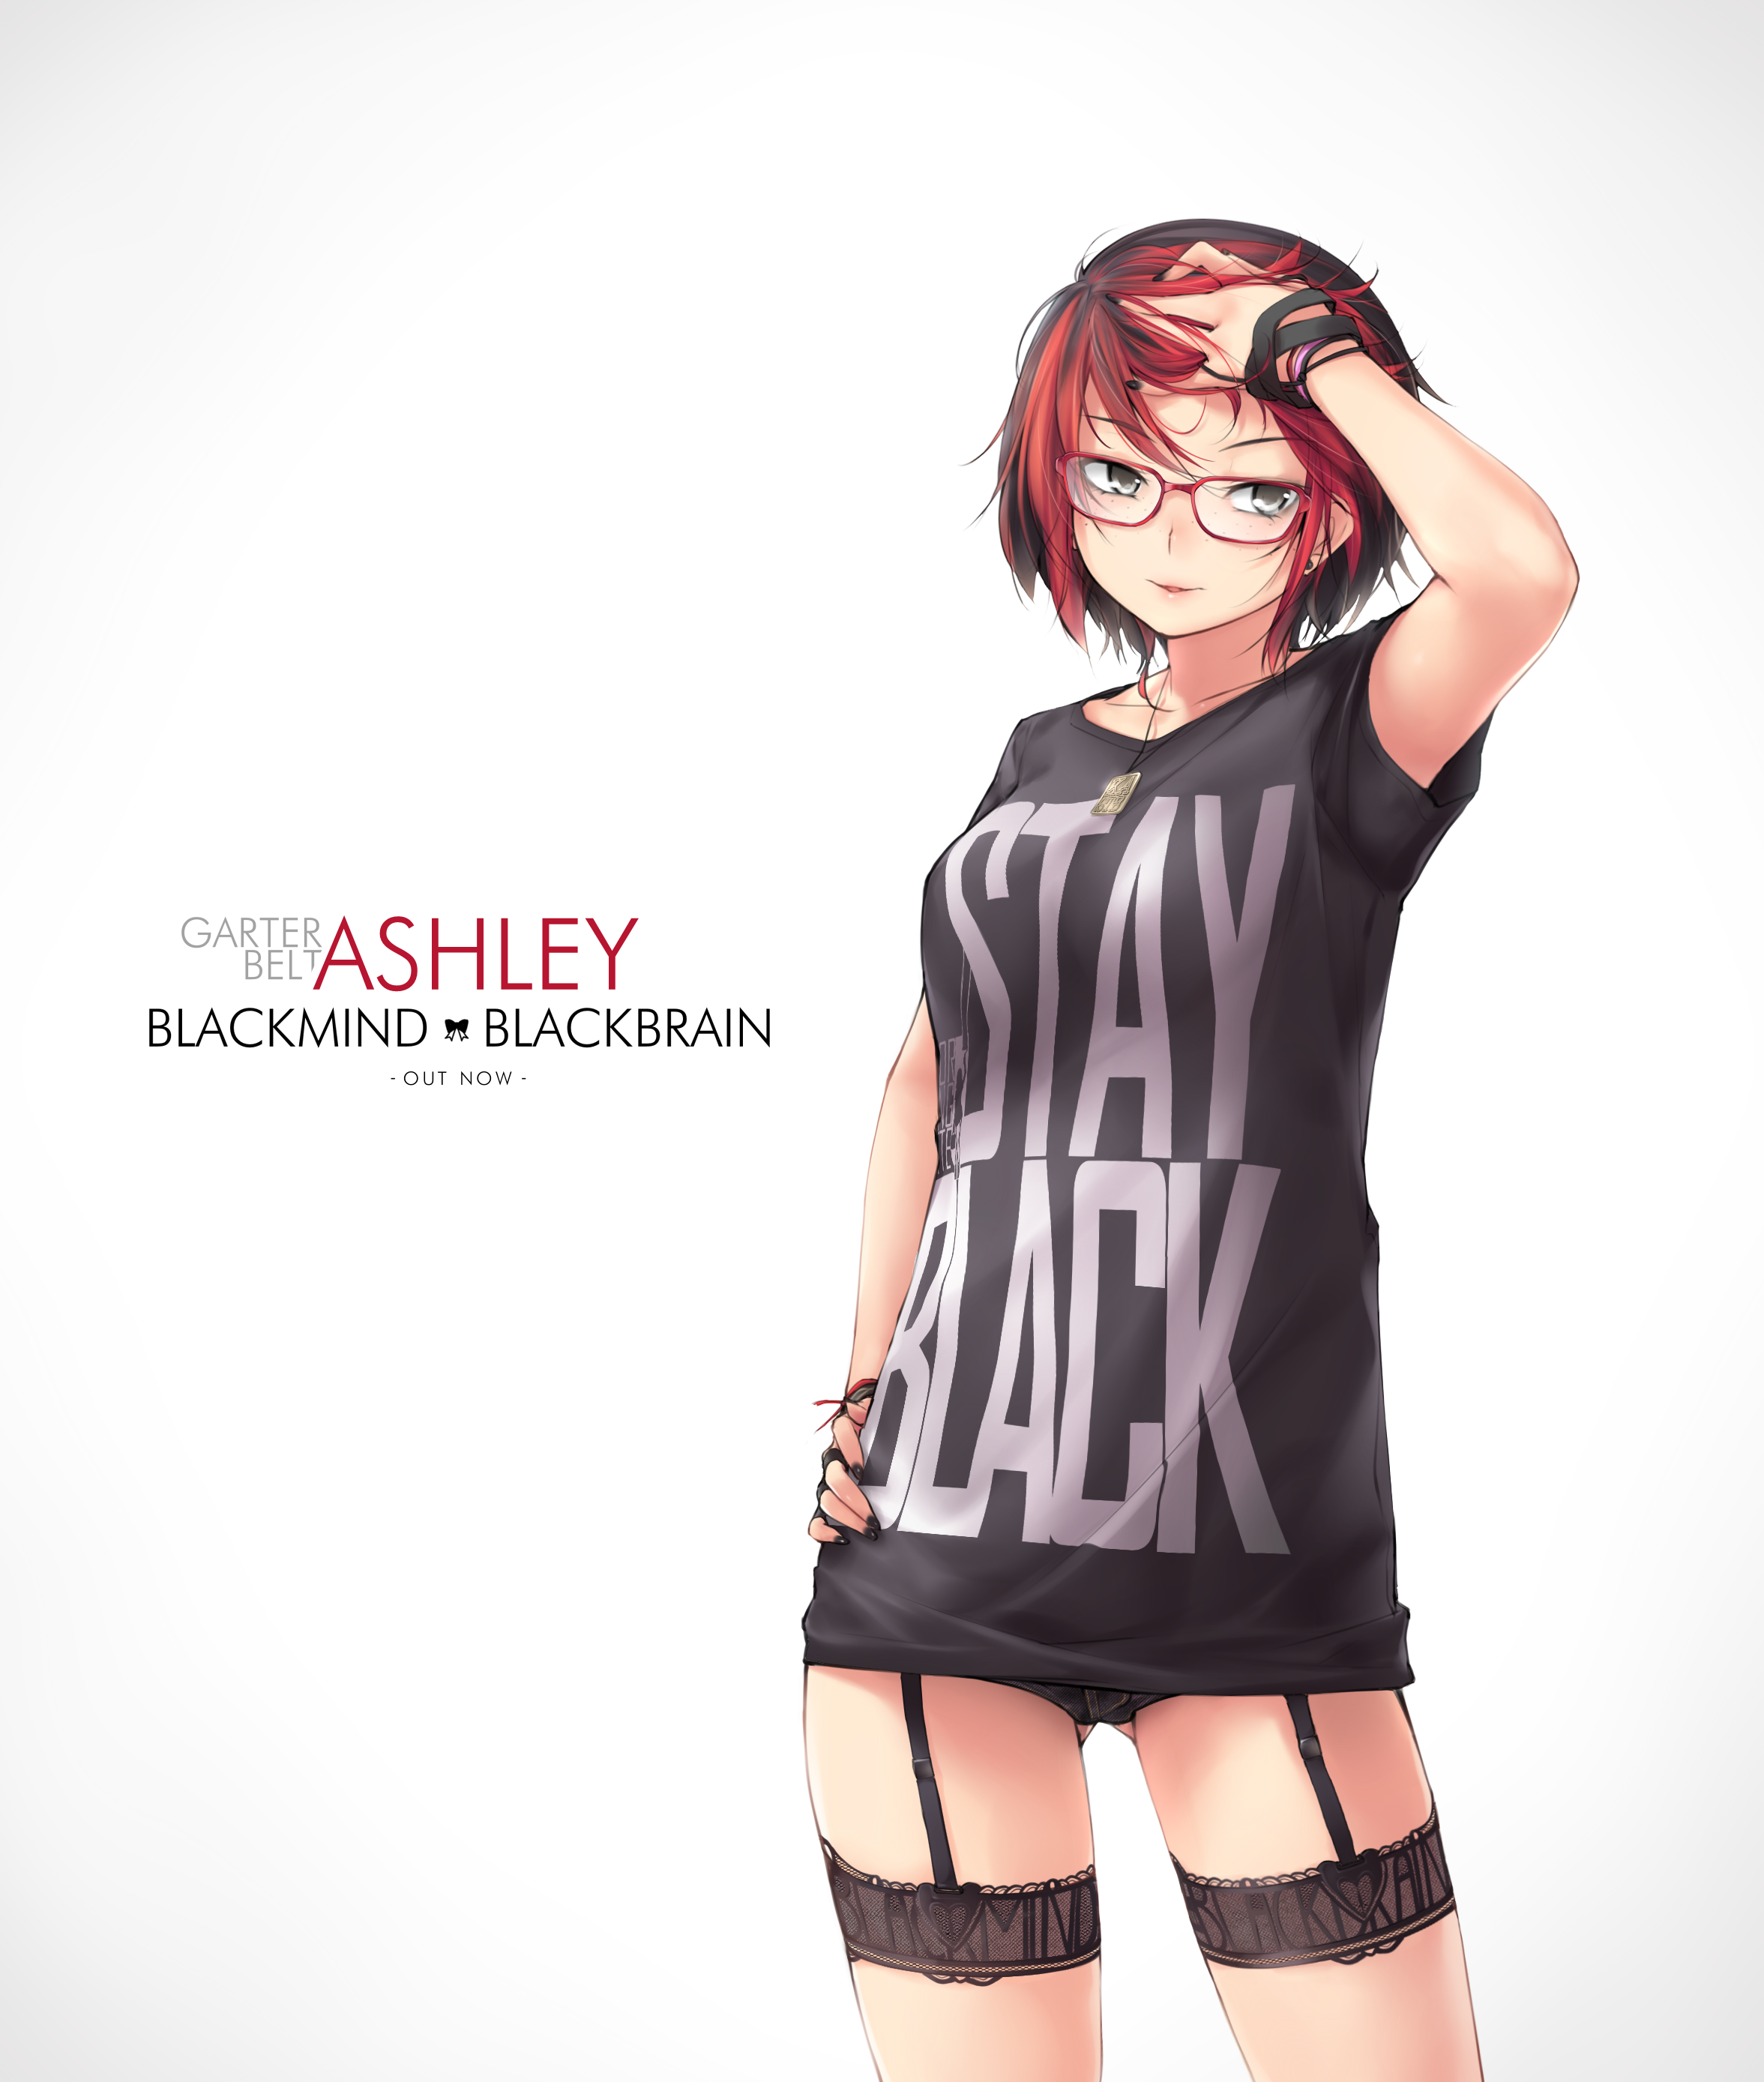 Anime 2353x2777 anime anime girls short hair redhead glasses kopianget Huniepop 2 Ashley Rosemarry garter straps stockings short shorts T-shirt